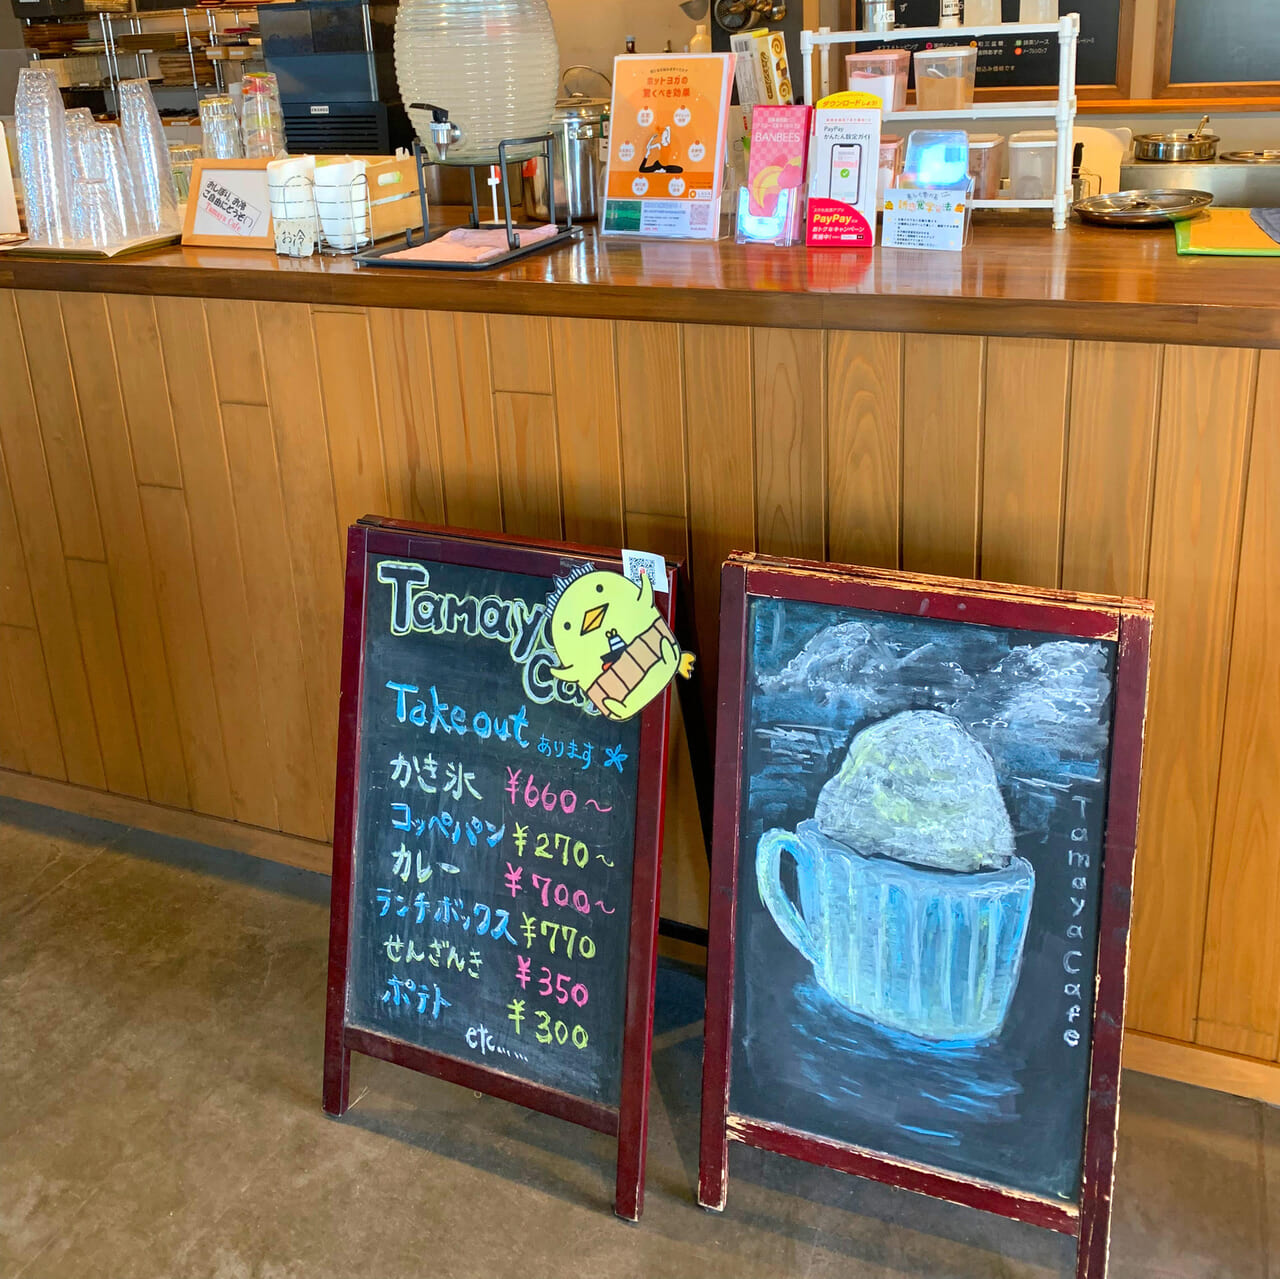 常盤町にある喫茶店「タマヤカフェ」は落ち着いた空間とデザートがおすすめのお店です!!